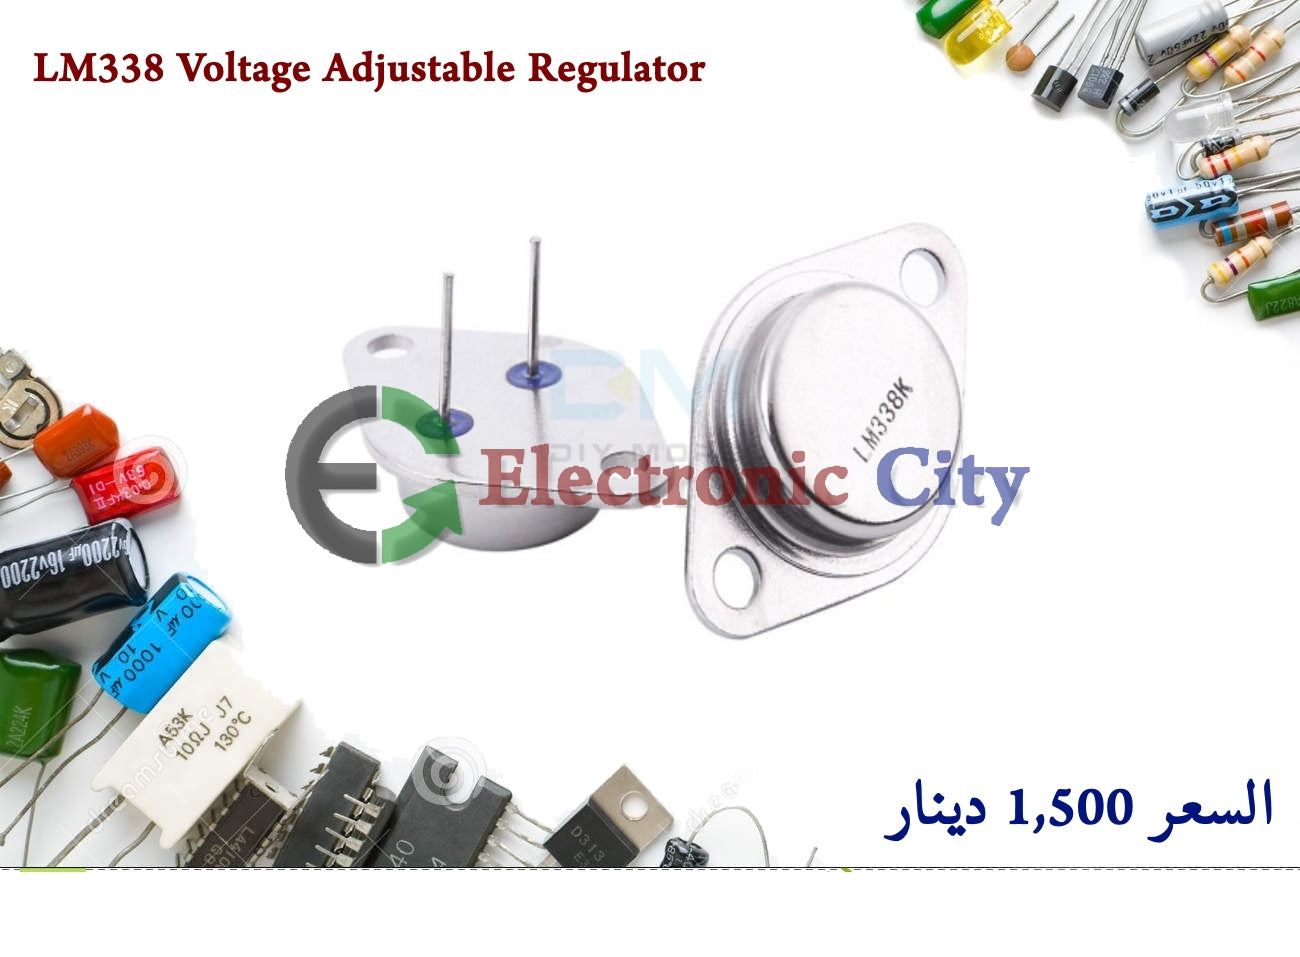 LM338 Voltage Adjustable Regulator